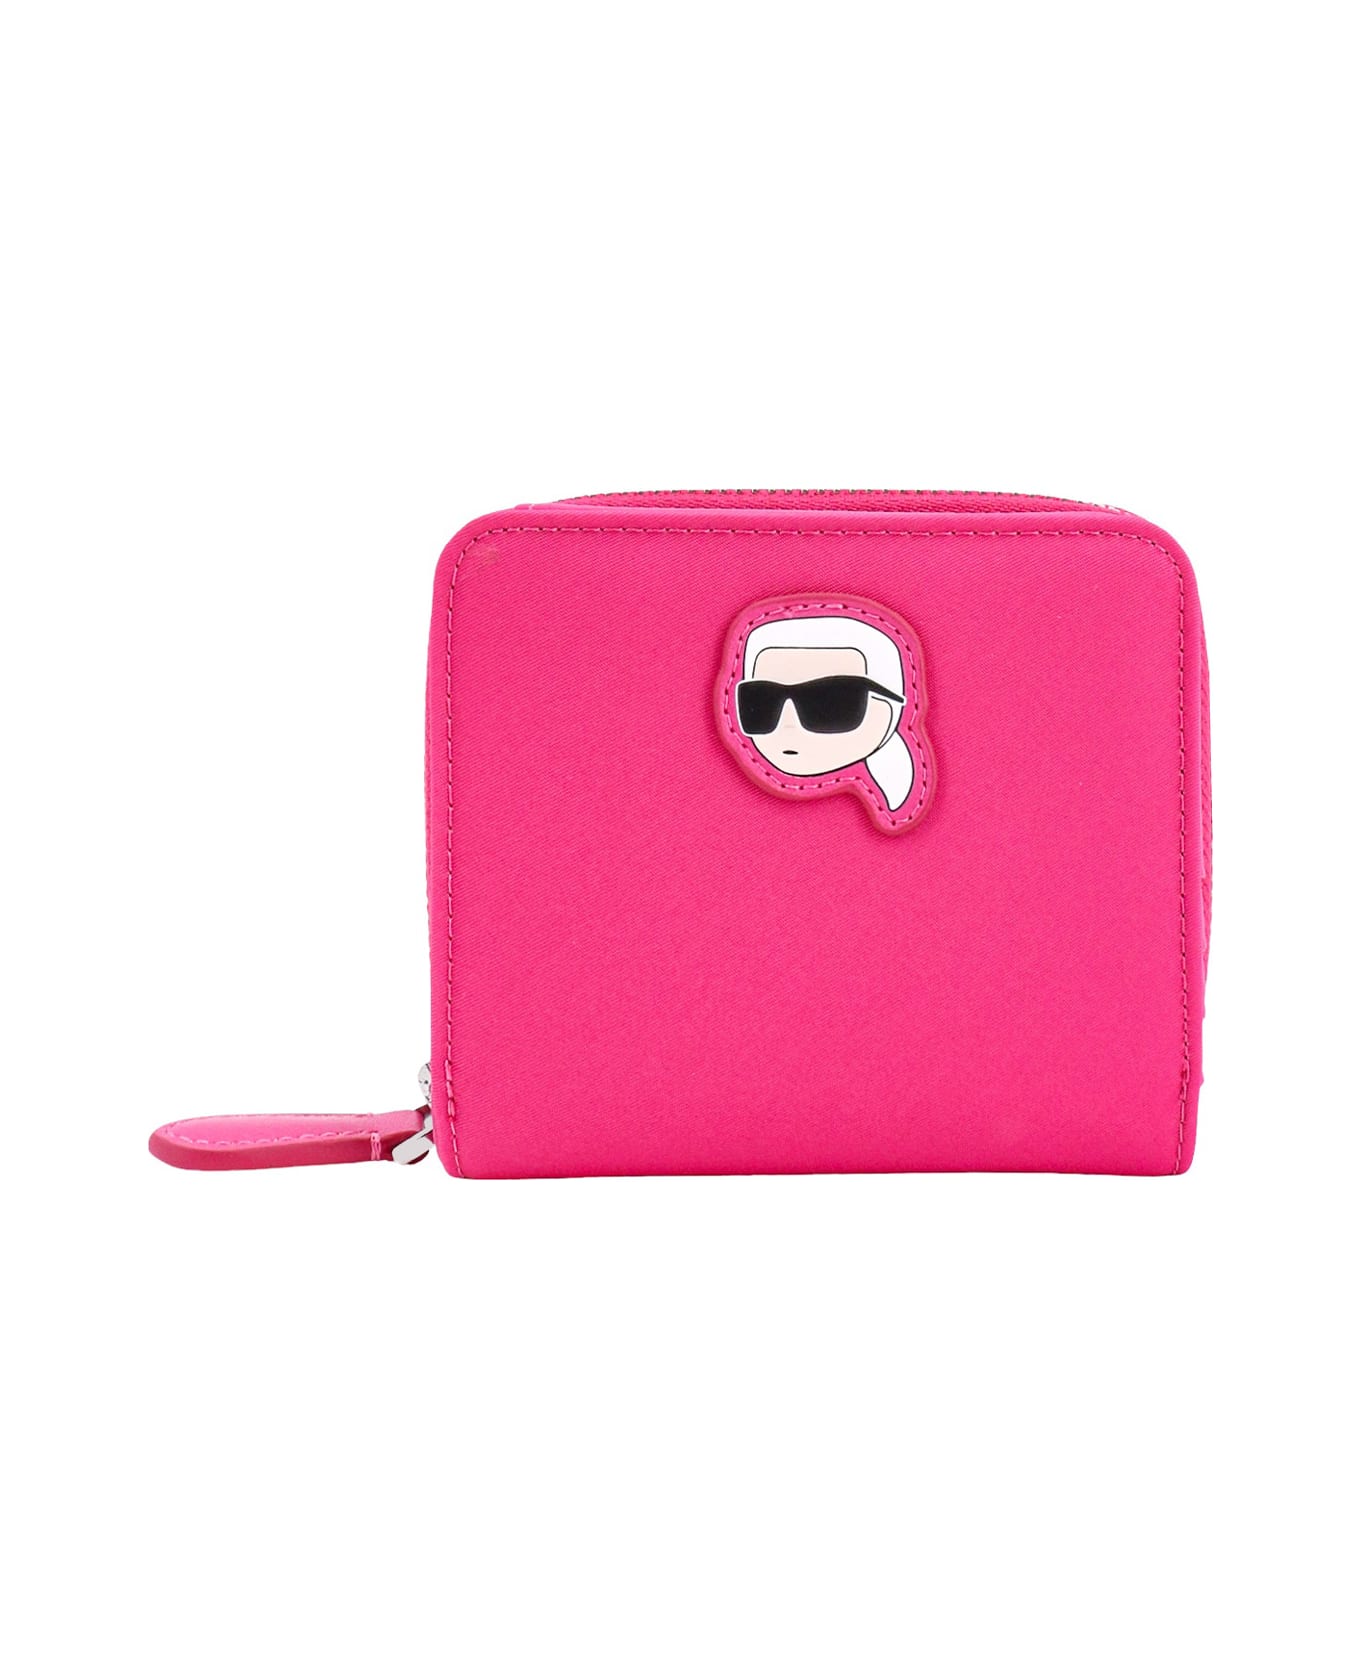 Karl Lagerfeld Wallet - Pink